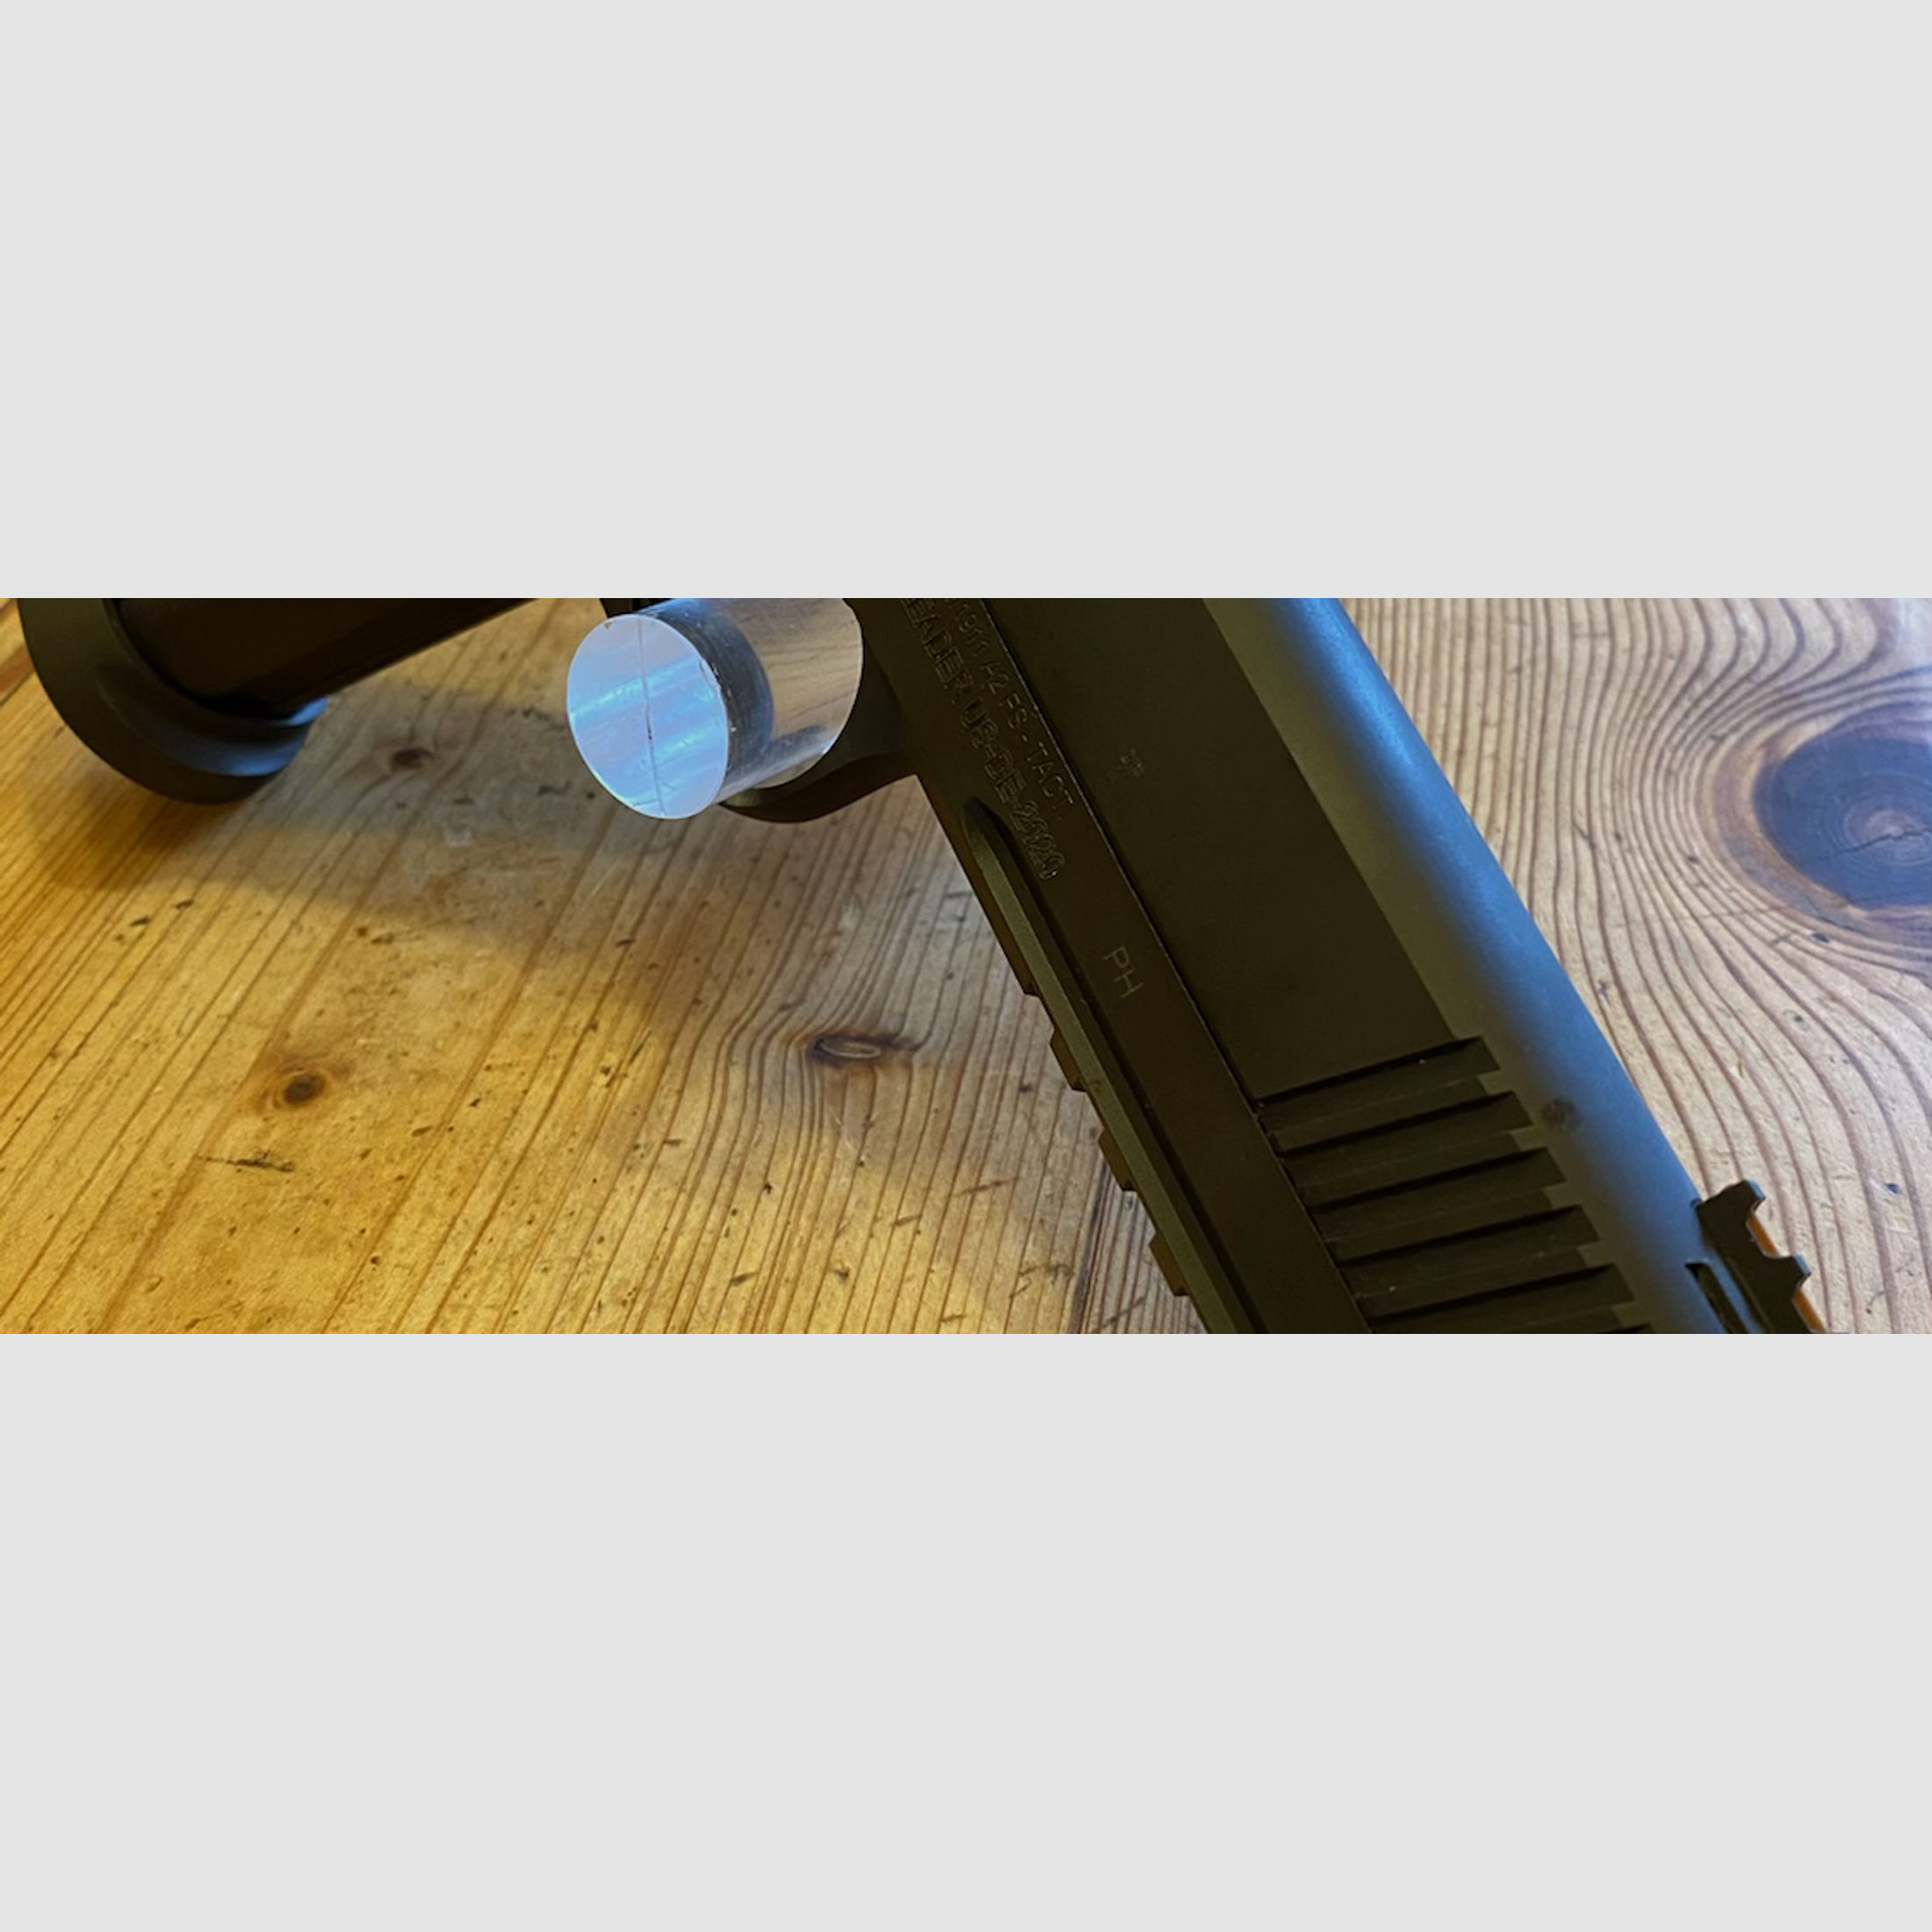 ARMSCOR 1911 A2 FS HC TAC ULTRA  5" | 9mm Luger